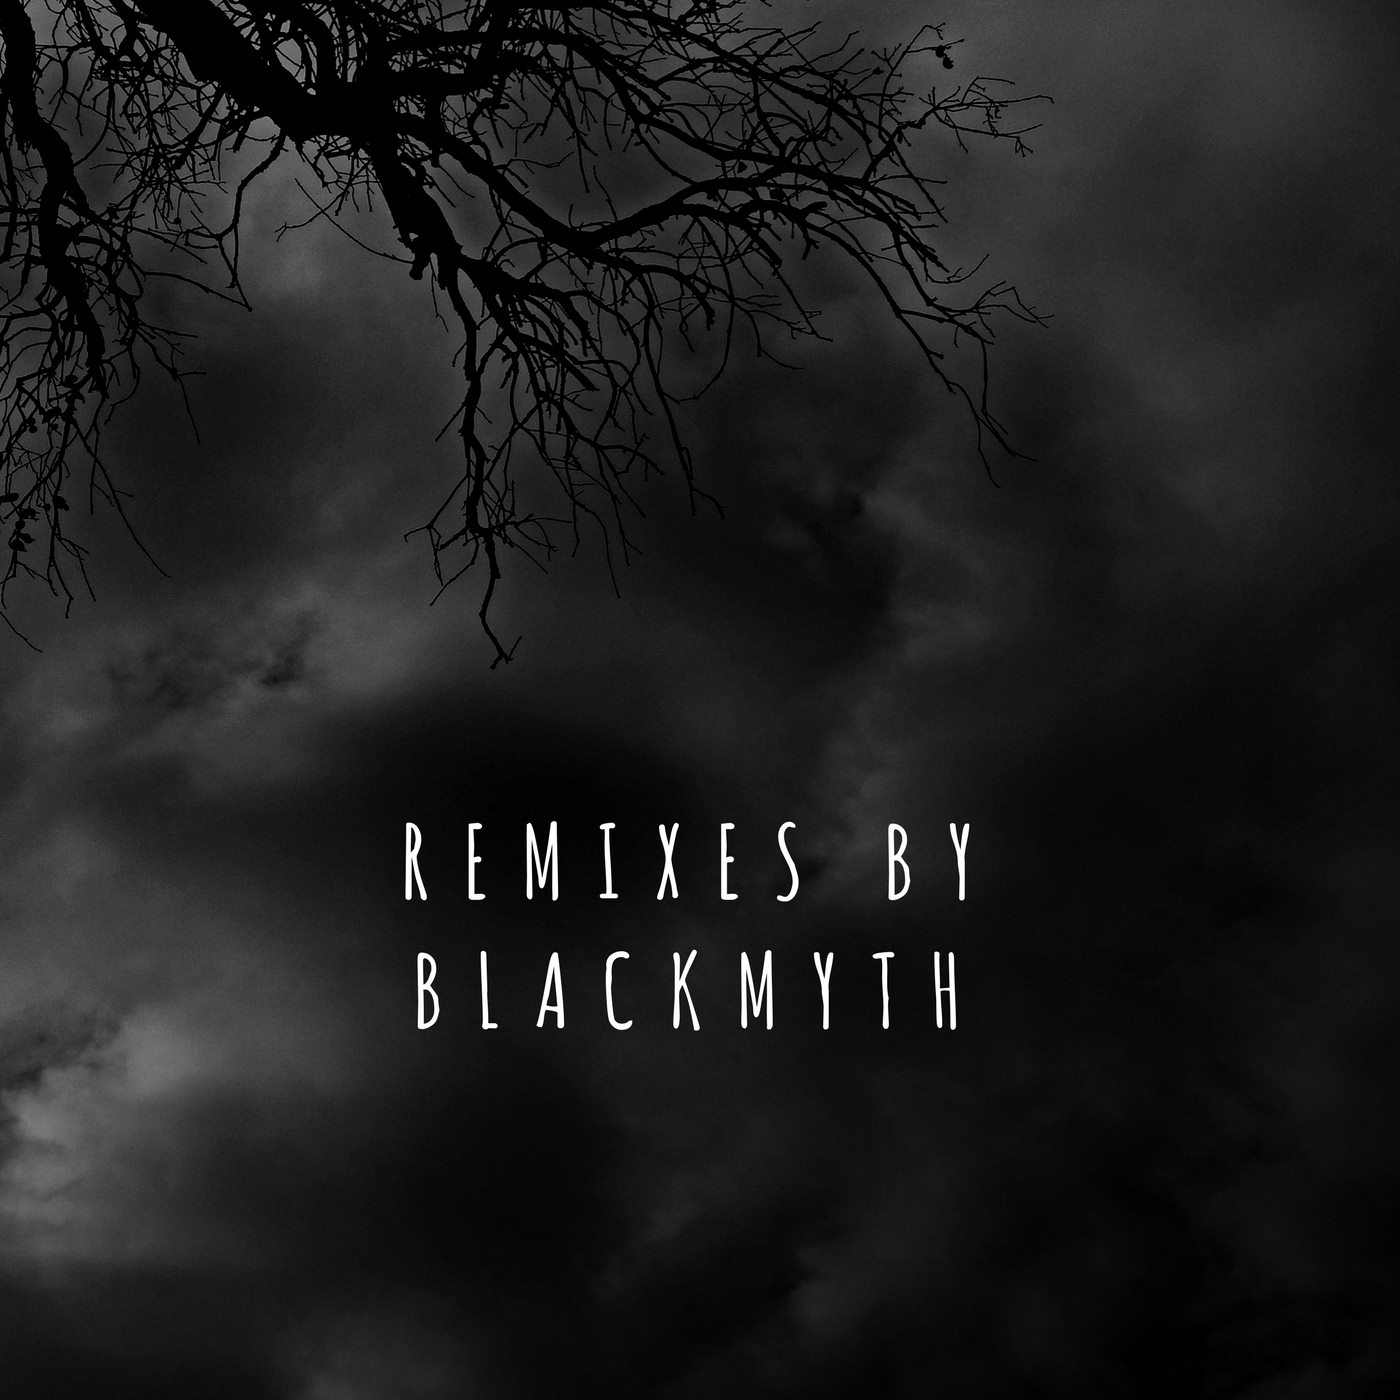  Blackmyth – Remixes By Blackmyth